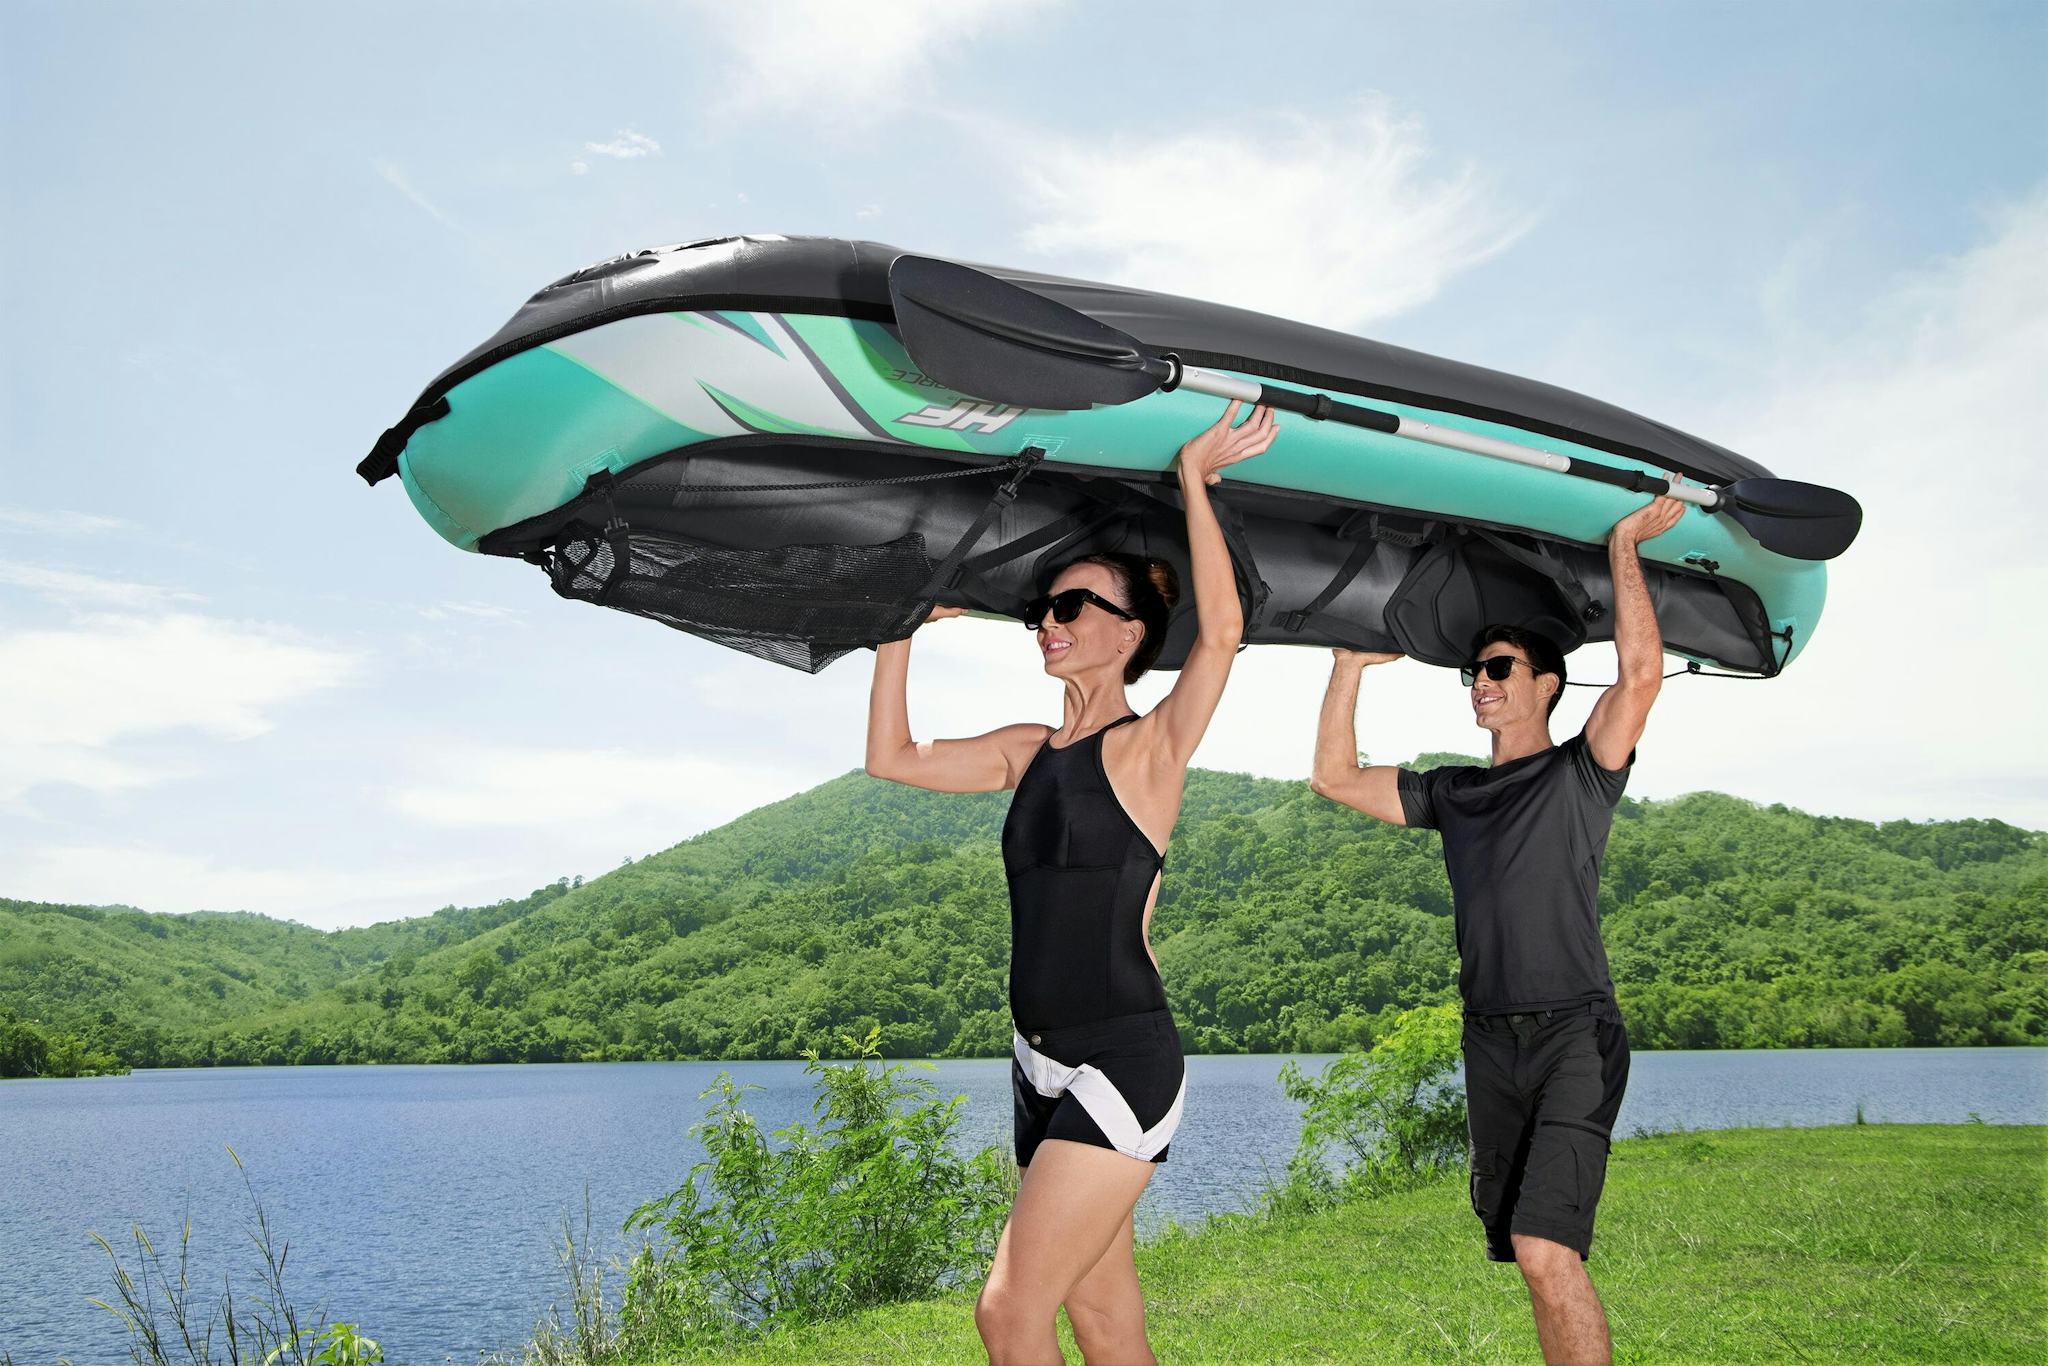 Sports d'eau Kayak gonflable Hydro-Force™ Ventura Elite X2 330 x 86 cm 2 adultes, pagaie, pompe Bestway 7